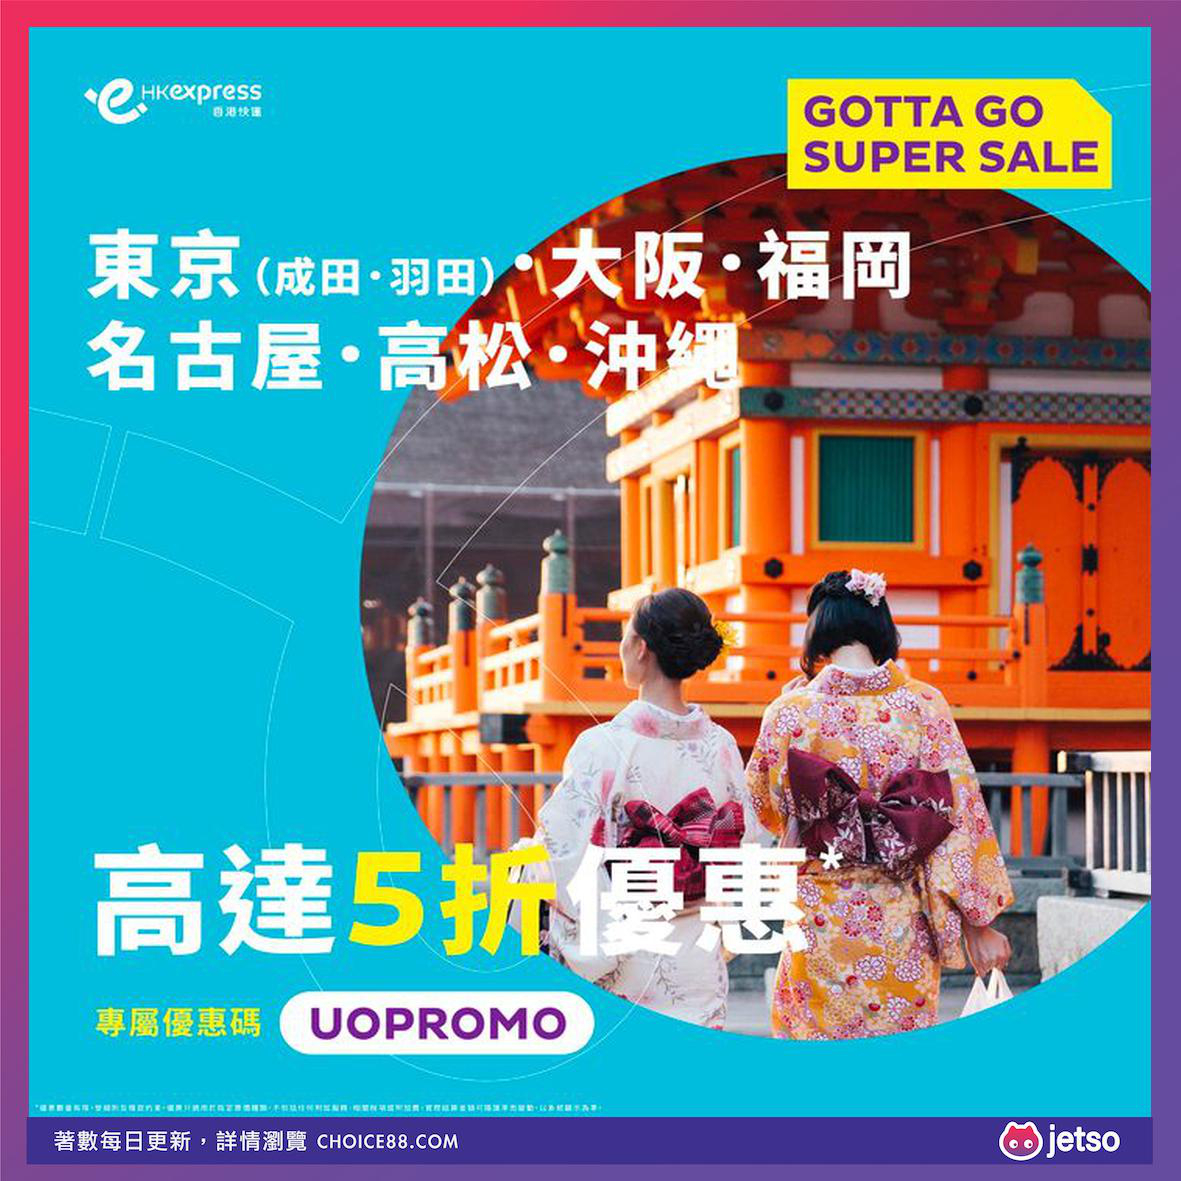 HK Express : [機票優惠]日本全航點票價高達50%優惠